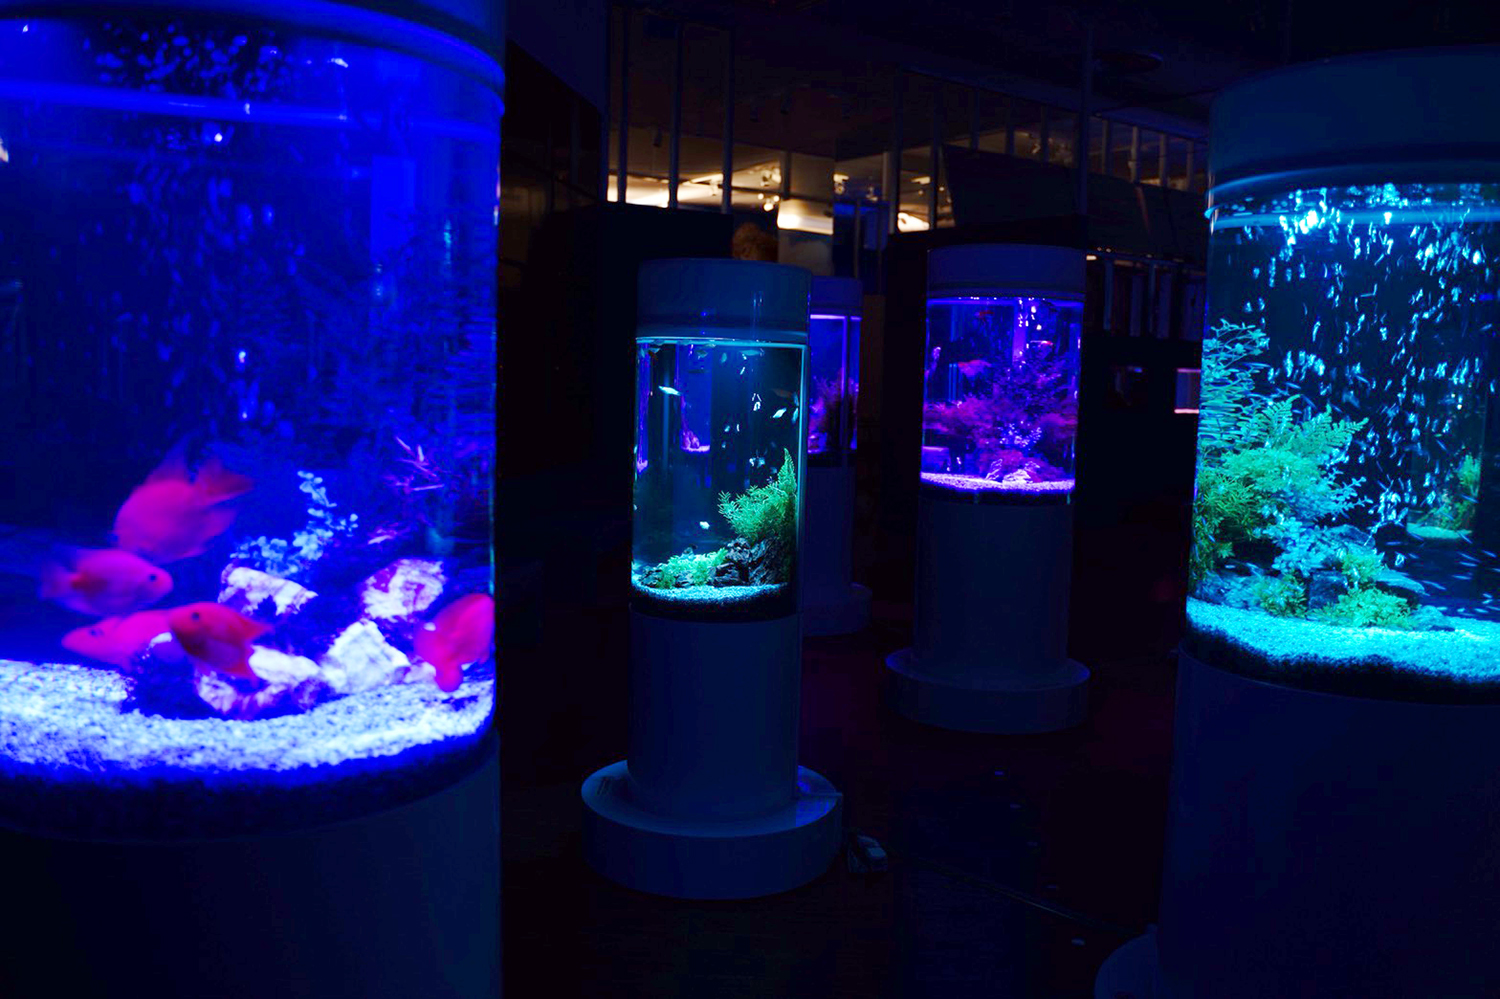 イオンモール木更津に2 000匹の美しい魚を展示するカフェ型水族館オープン 昨年のほぼ倍のスペース Emo Miu エモミュー